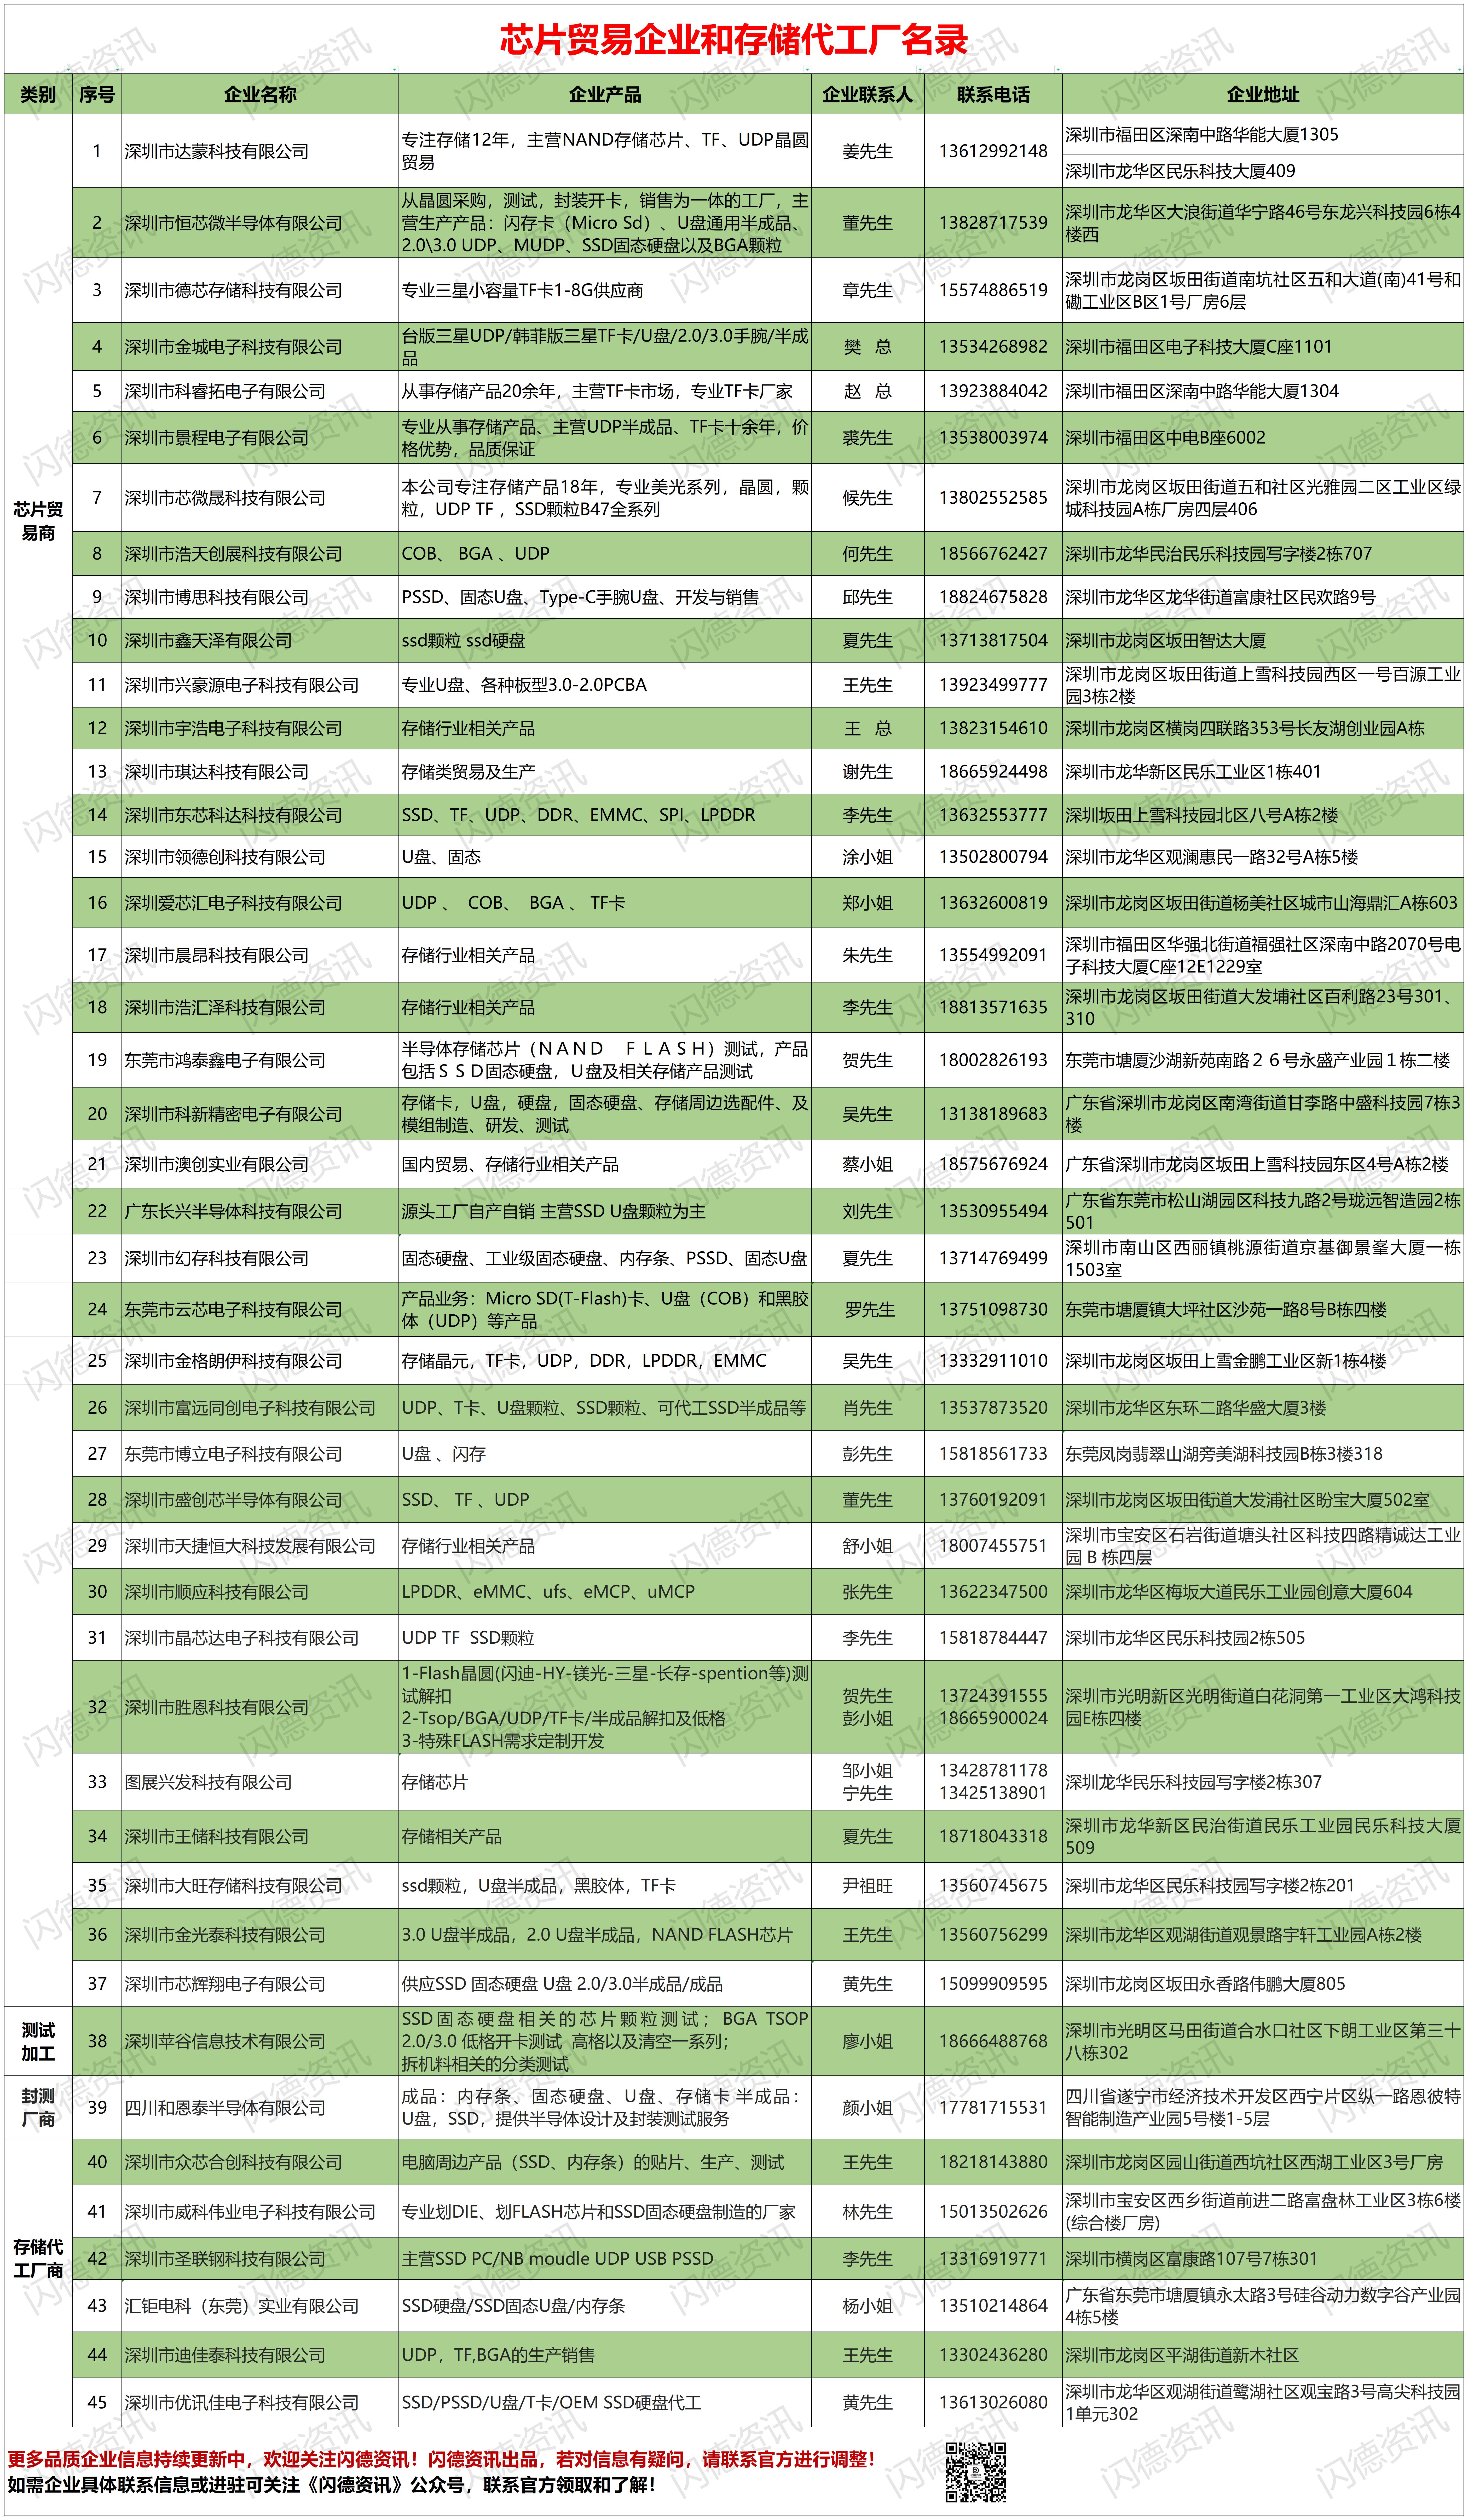 【企业名录】网页展示编辑表_公众号推文企业名录名单(1).jpg